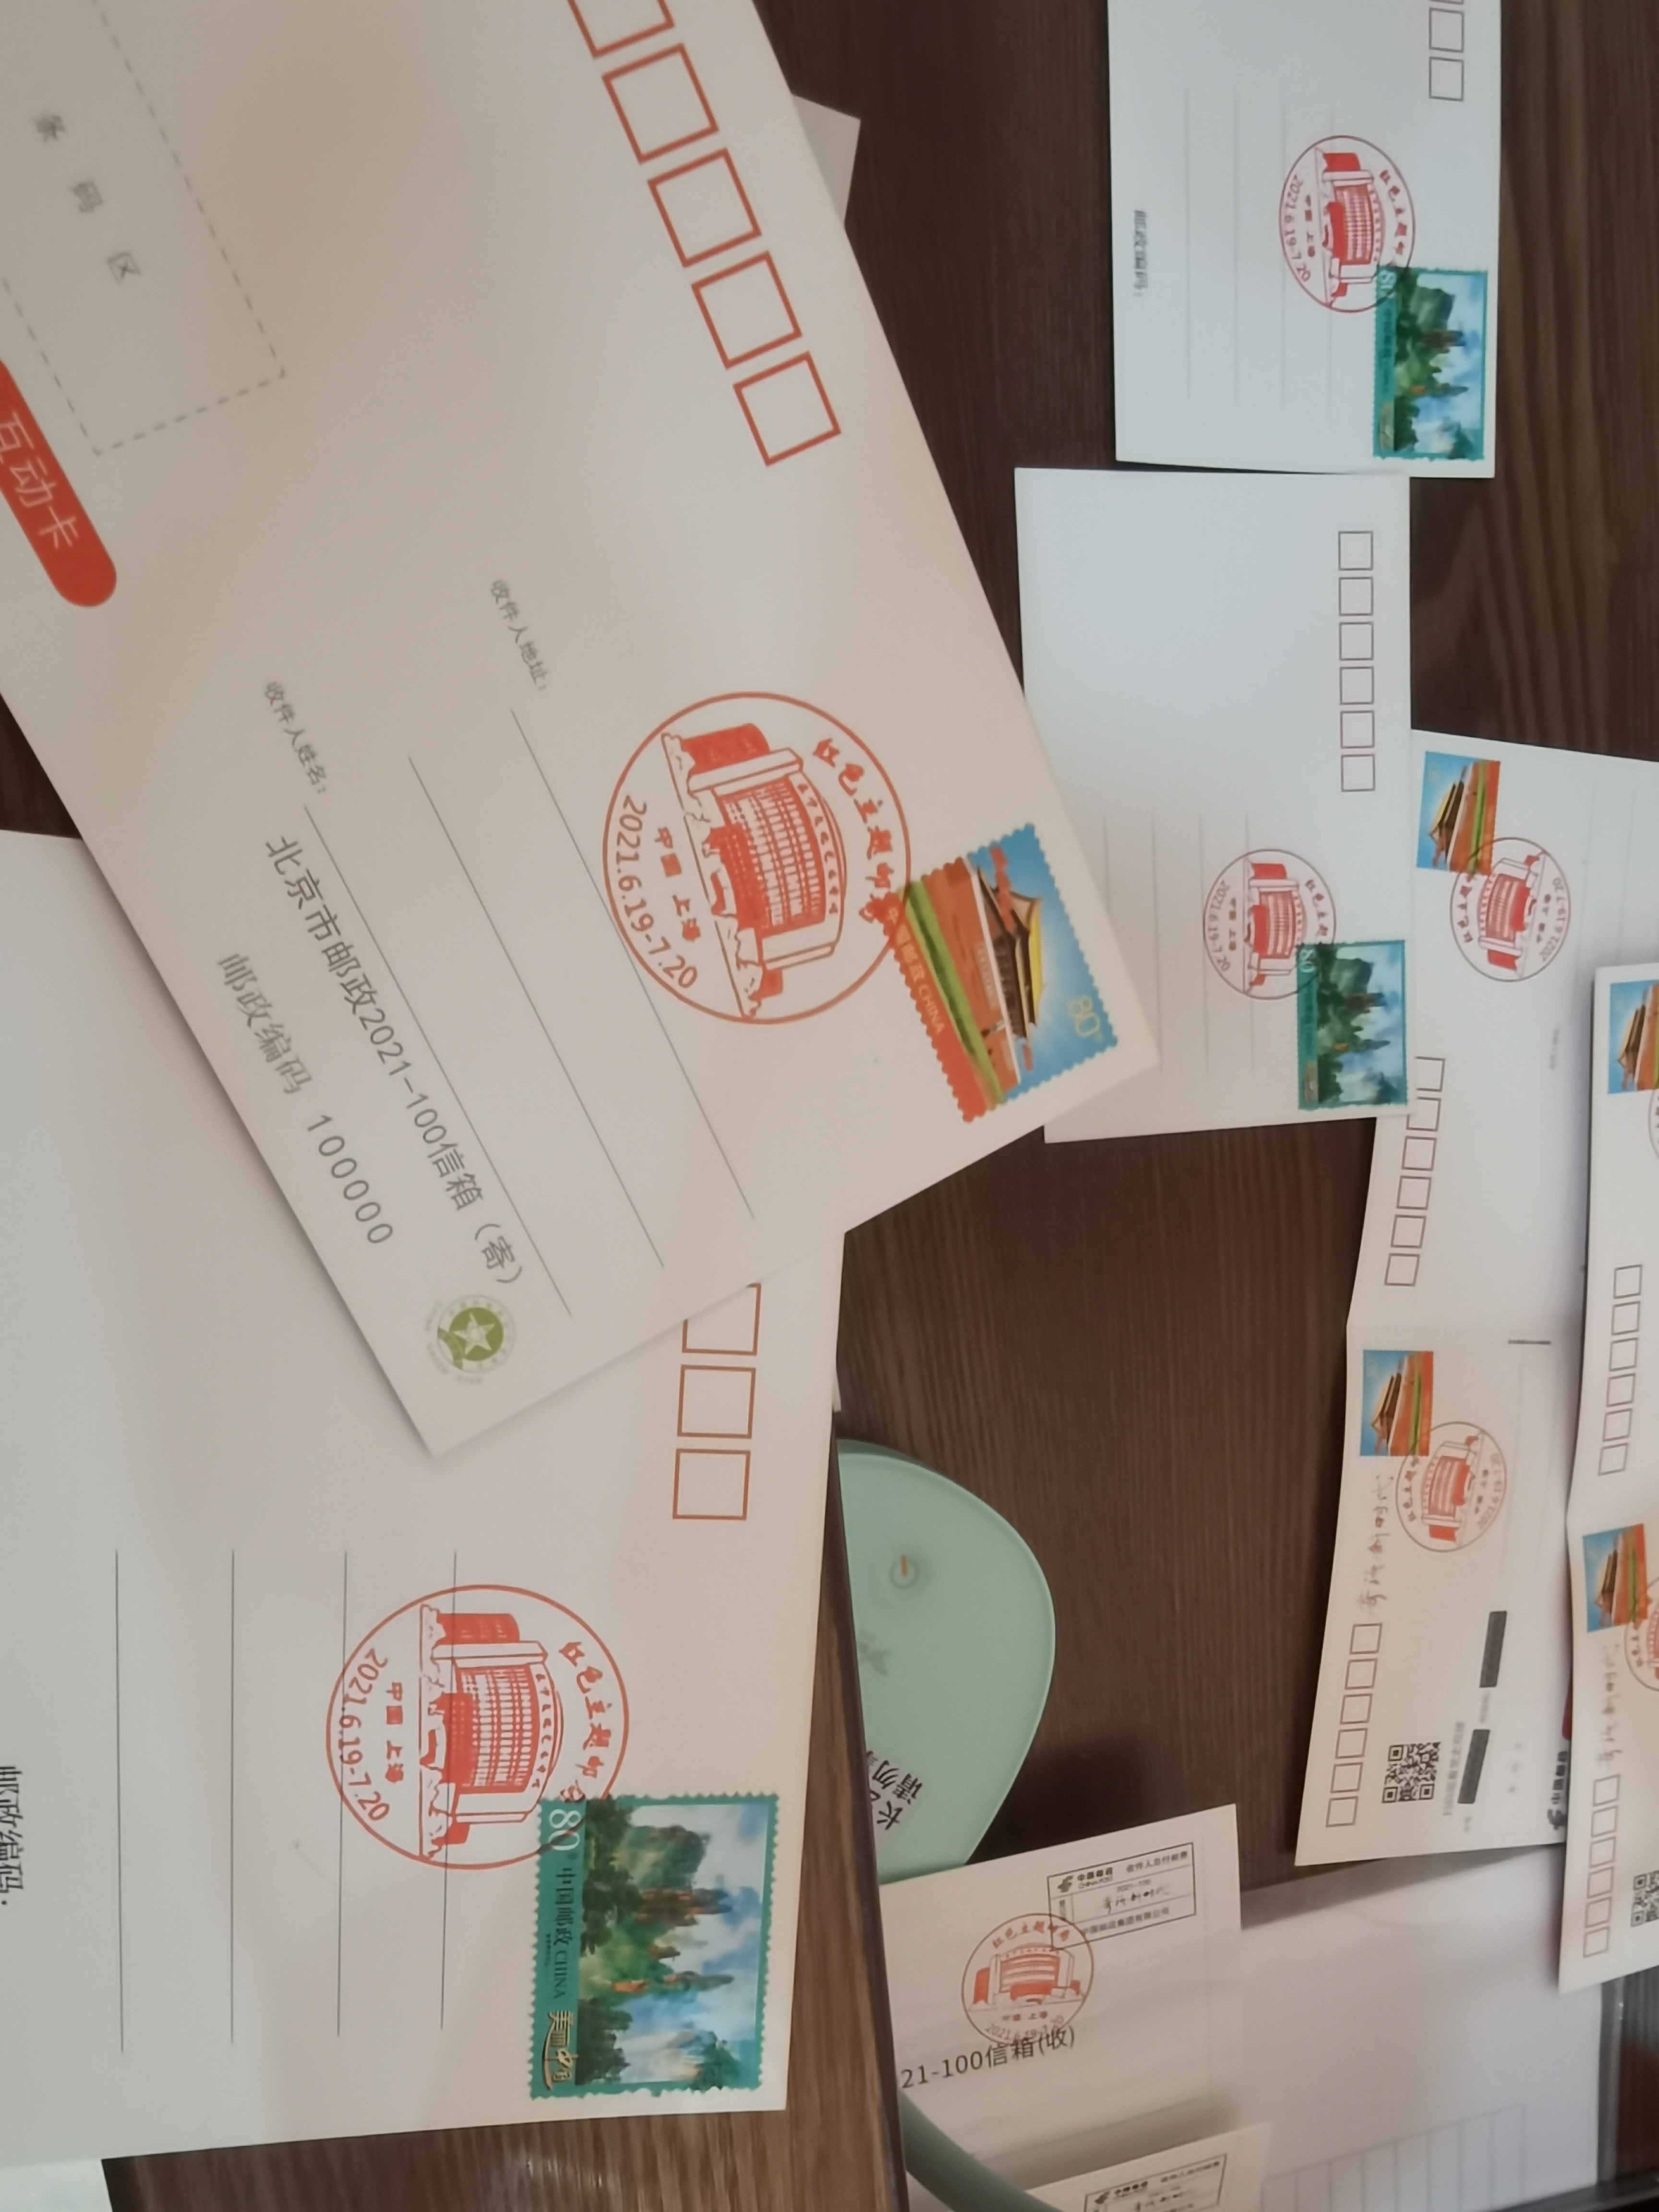 明信片上盖了为此次展览特制的“红色主题邮局”邮戳